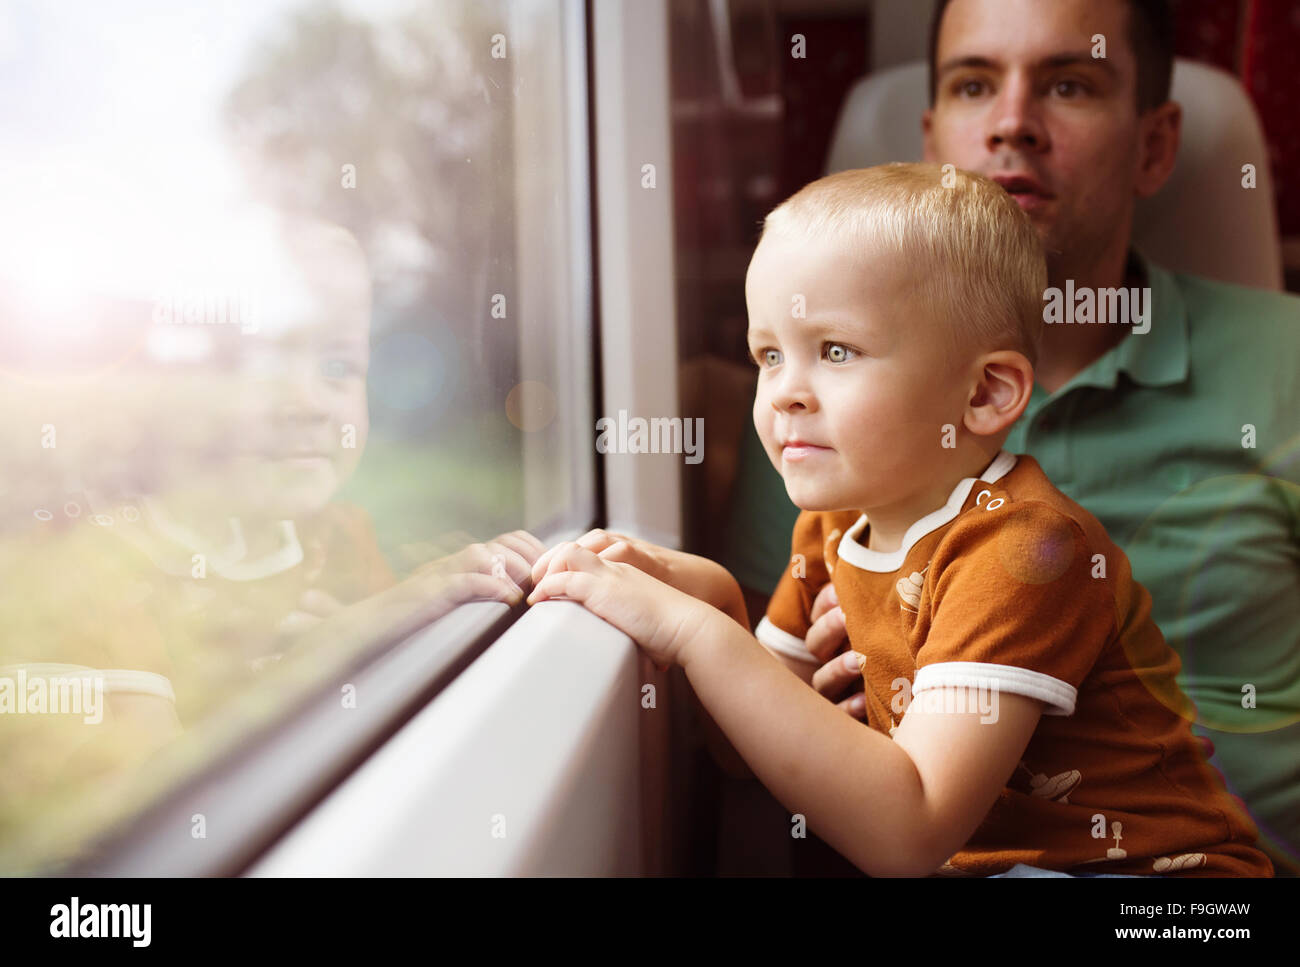 El padre con el hijo en su regazo viajando en tren. Foto de stock